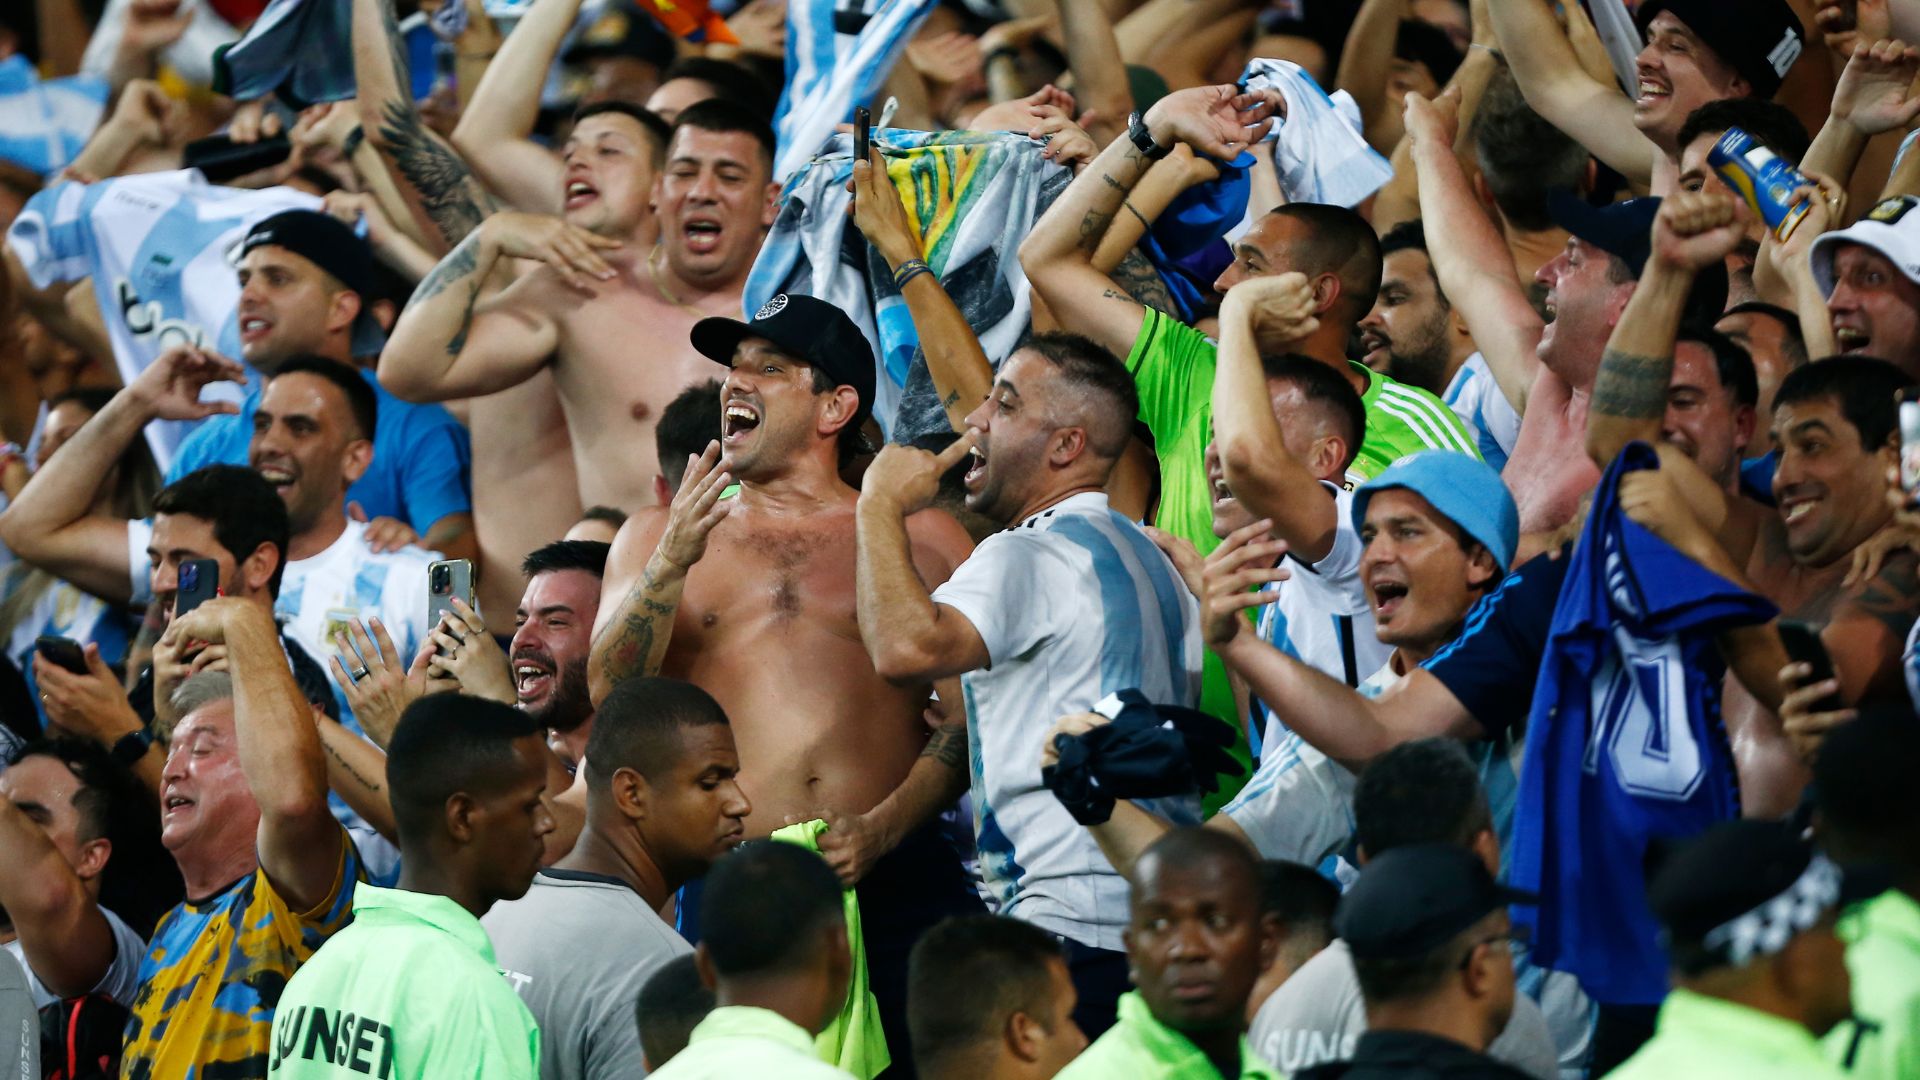 Torcida argentina comemorando a vitória após o término da partida (Crédito: Getty Images)